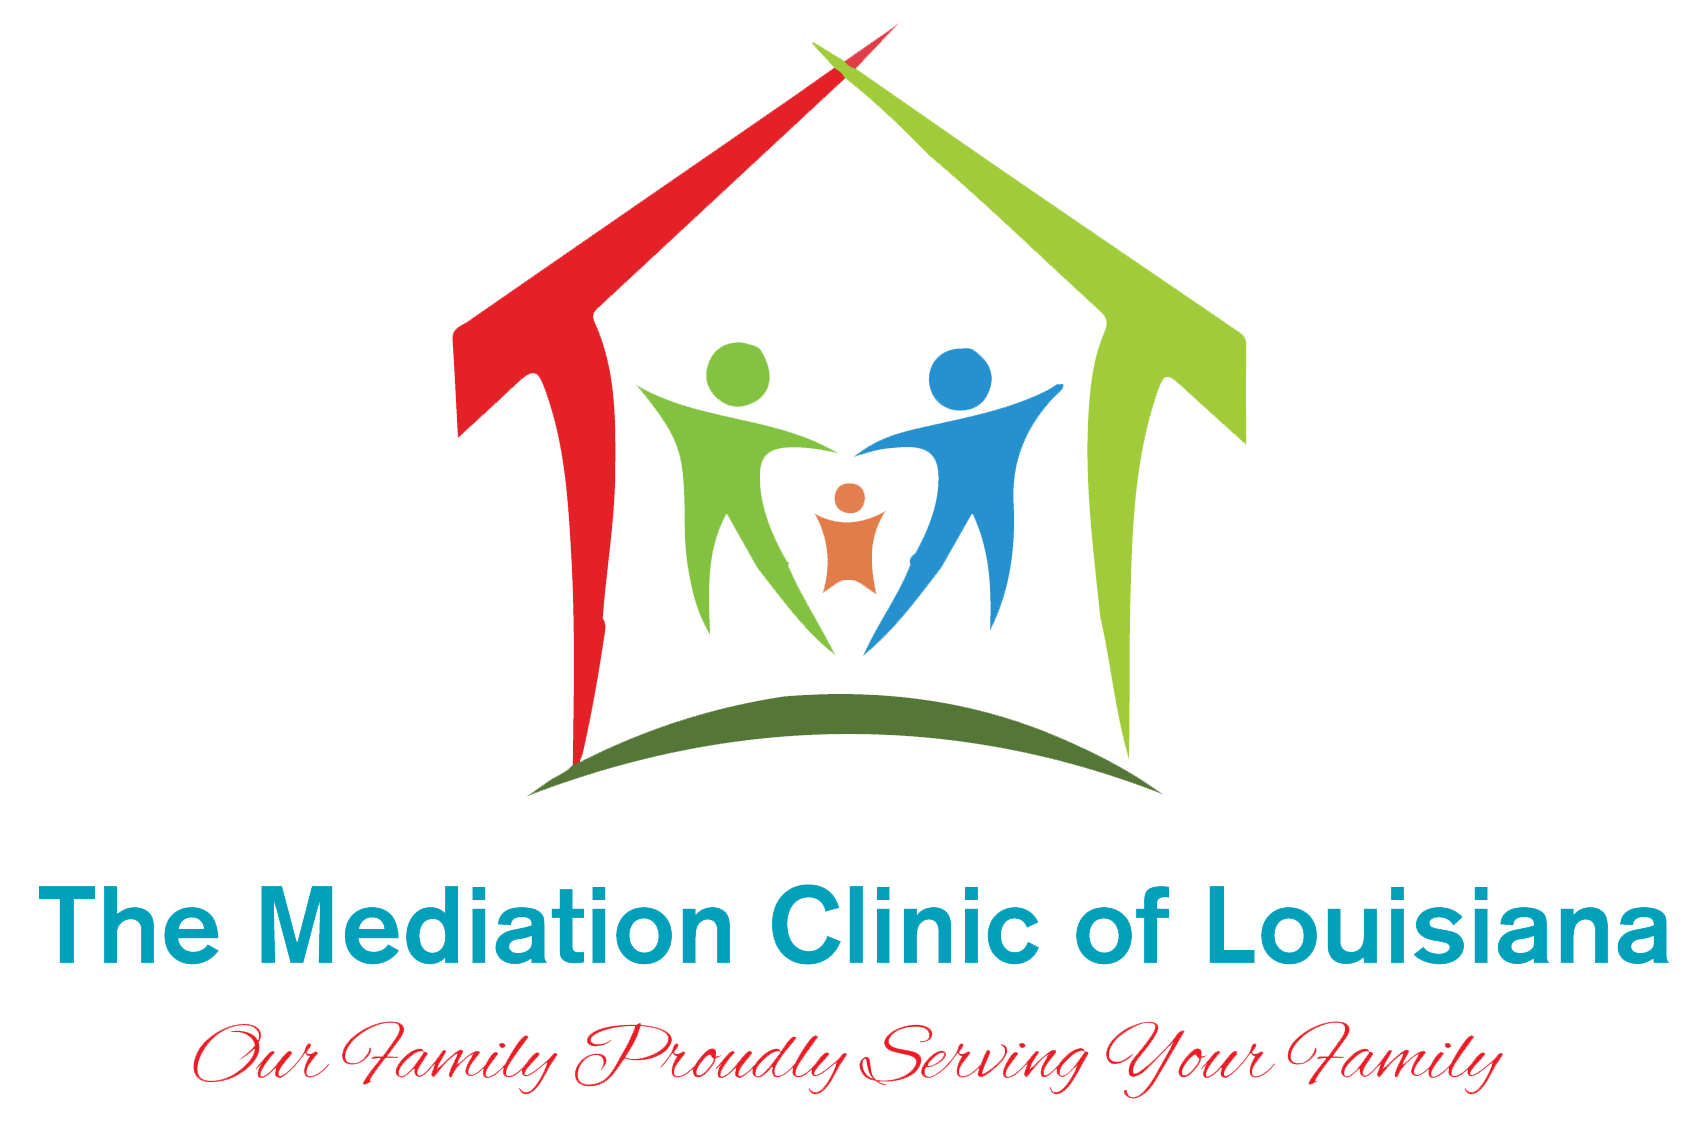 The Mediation Clinic of Louisiana